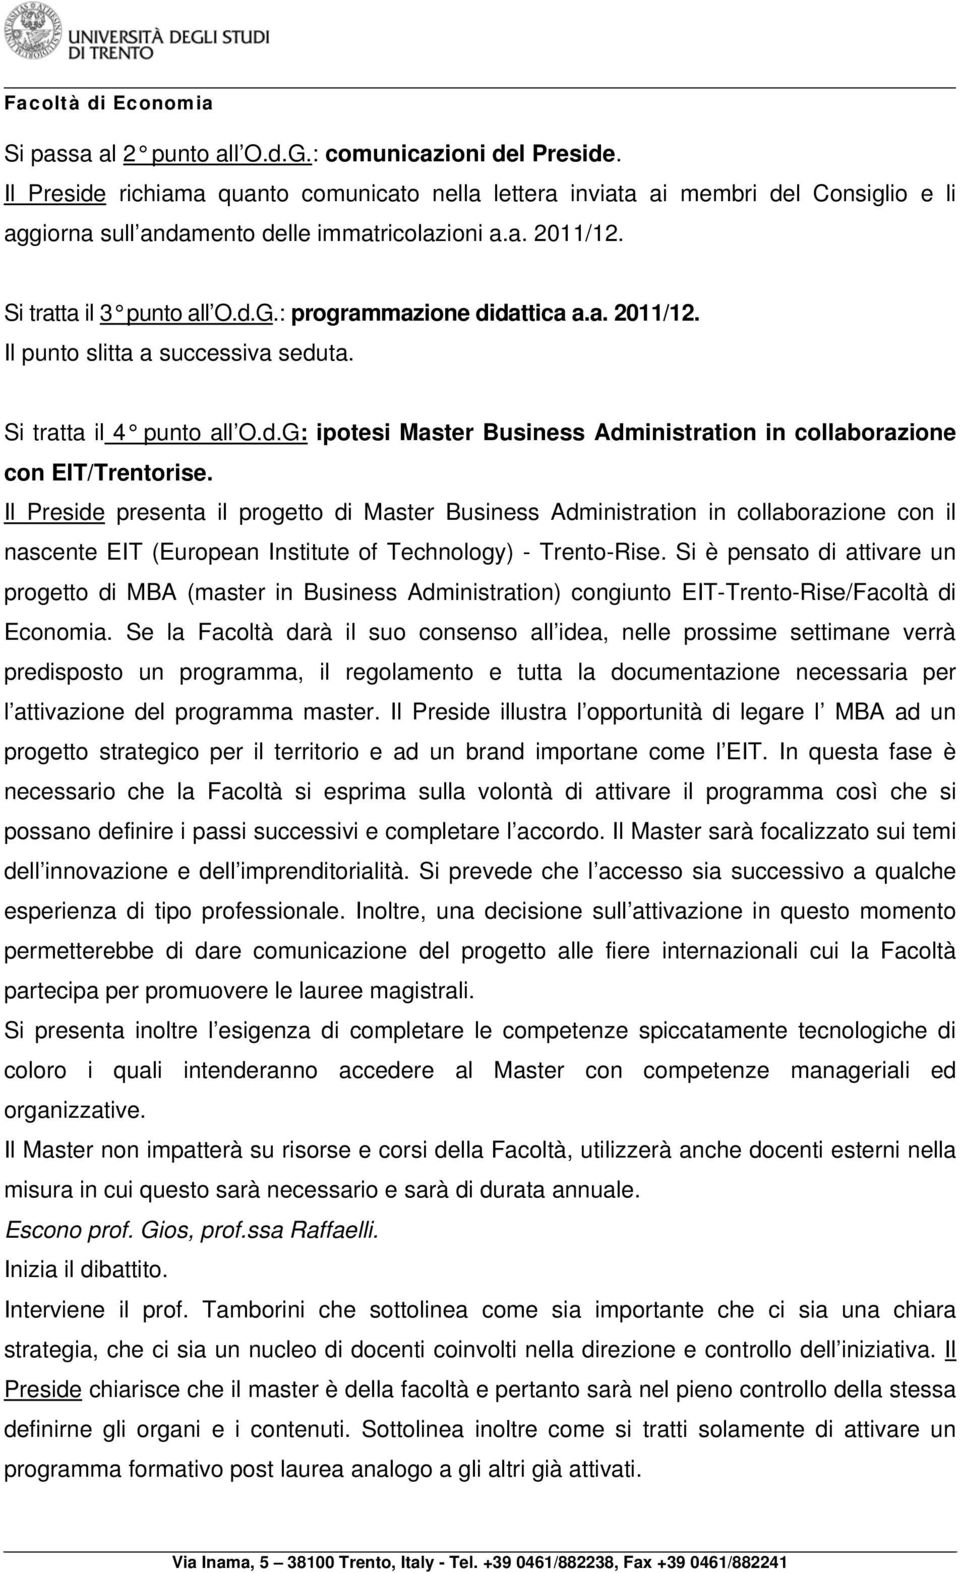 Il Preside presenta il progetto di Master Business Administration in collaborazione con il nascente EIT (European Institute of Technology) - Trento-Rise.